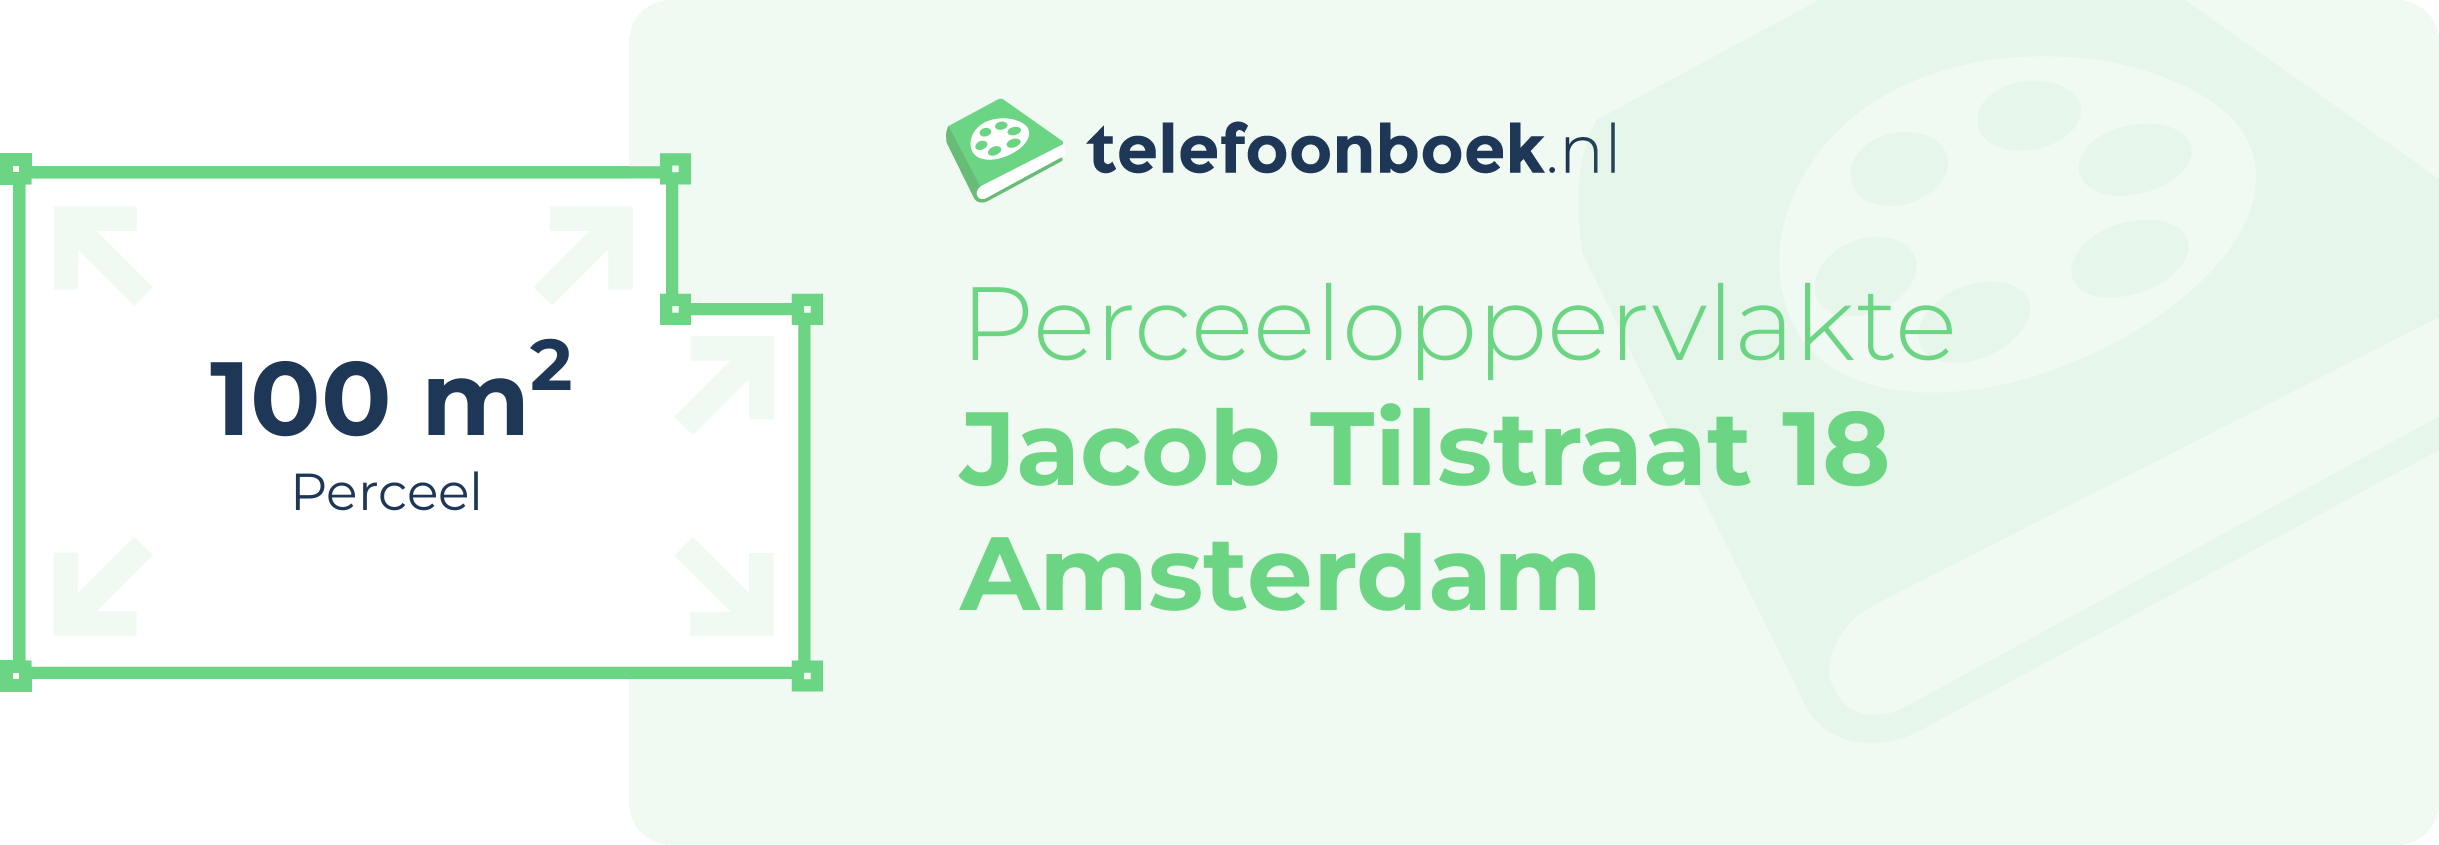 Perceeloppervlakte Jacob Tilstraat 18 Amsterdam